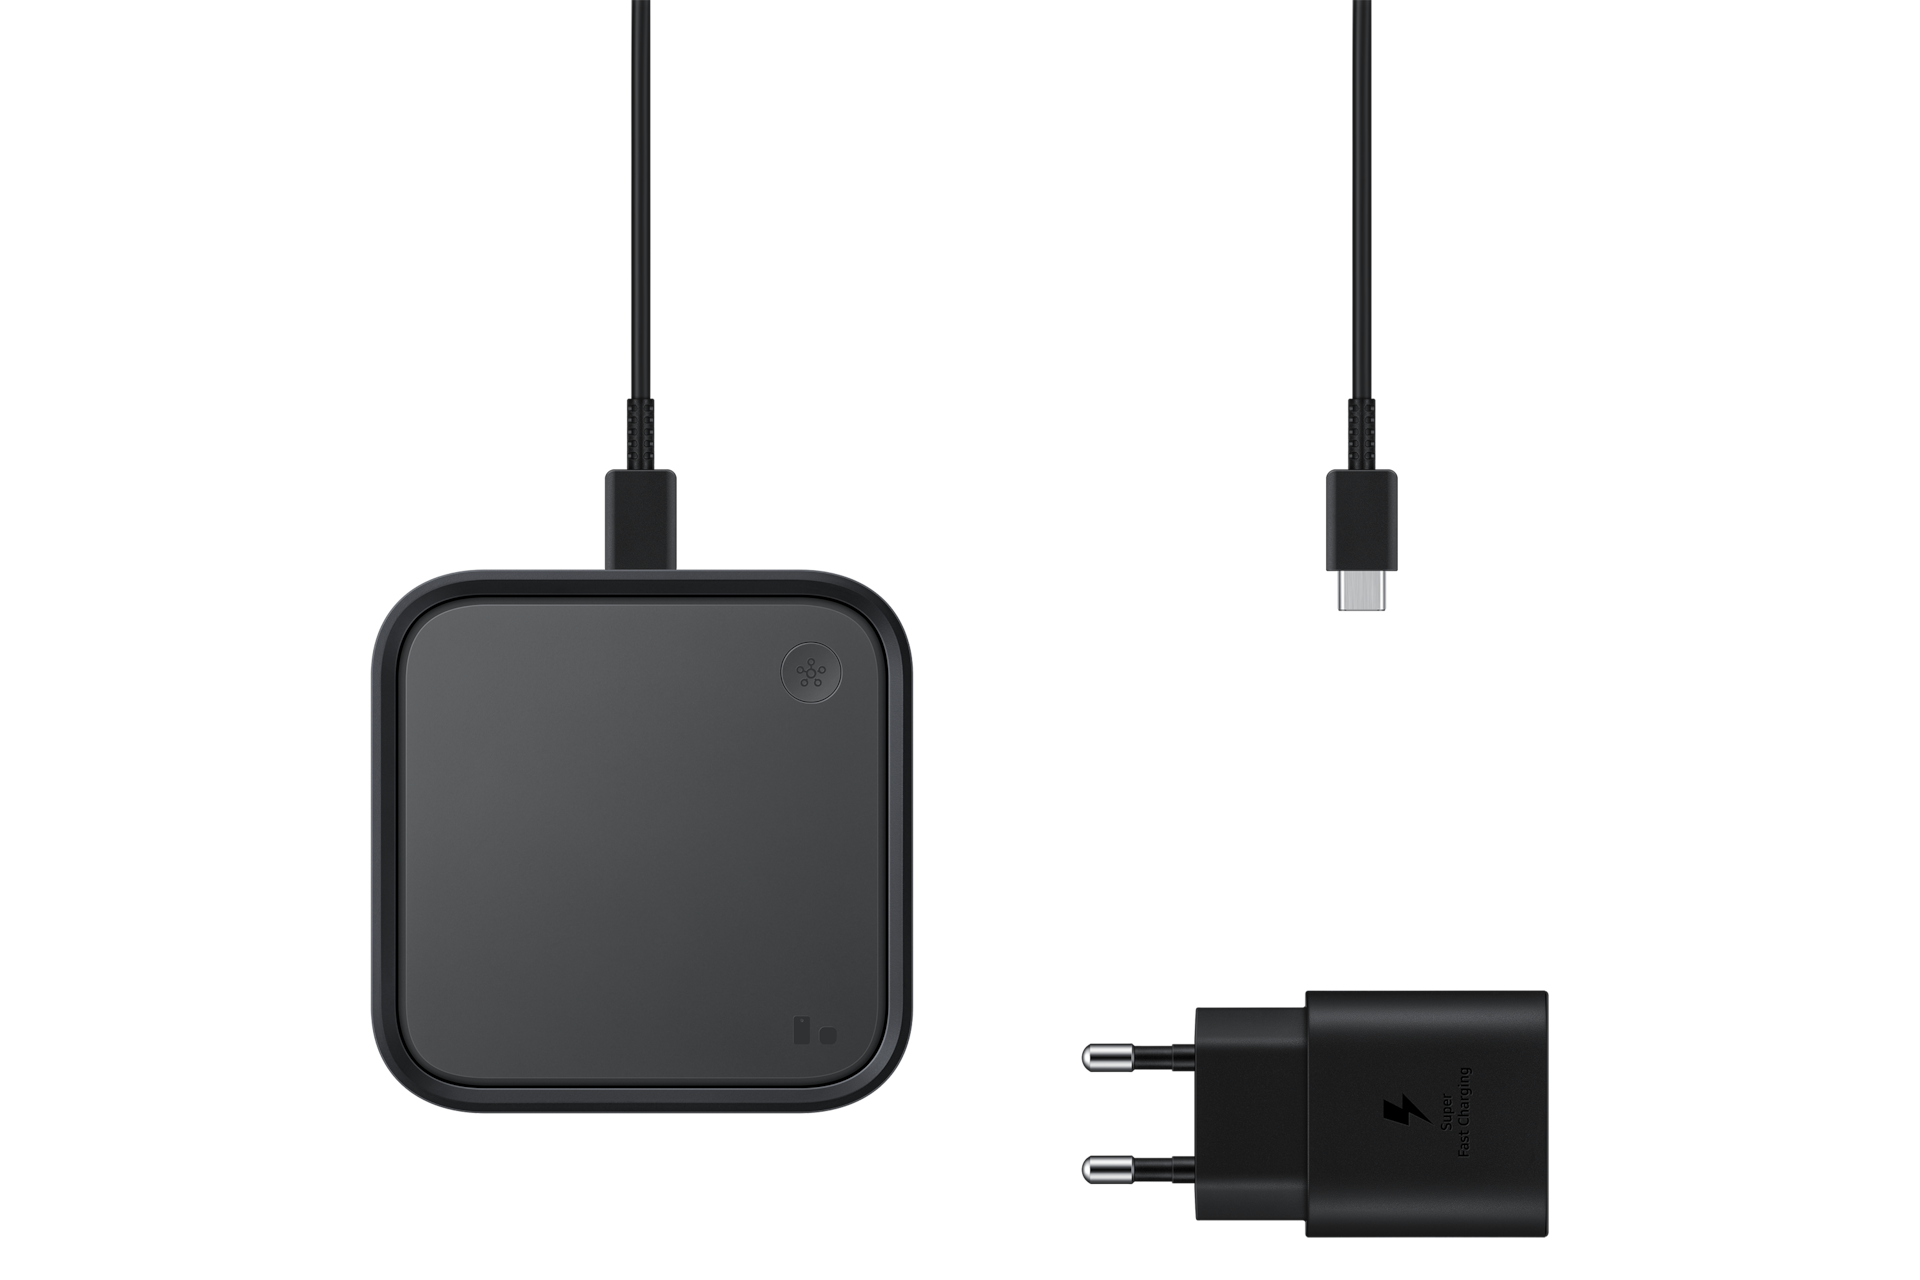 스마트싱스 스테이션 블랙 제품 USB 선과 어댑터가 같이 있는 이미지